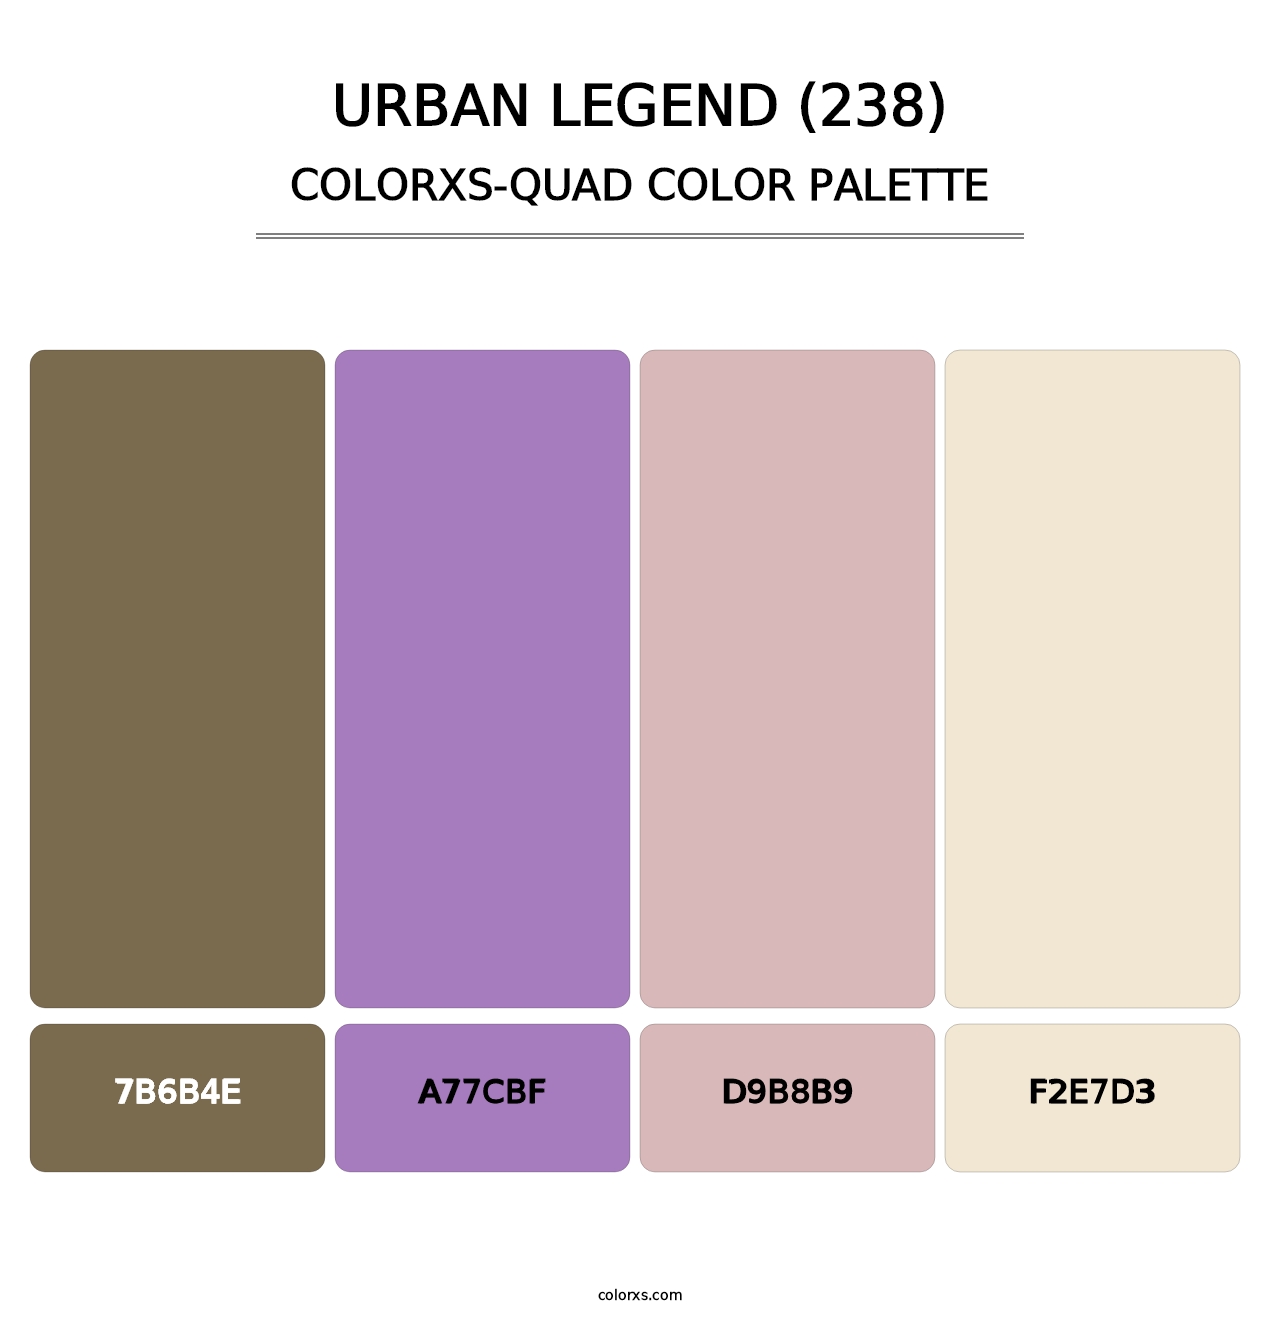 Urban Legend (238) - Colorxs Quad Palette